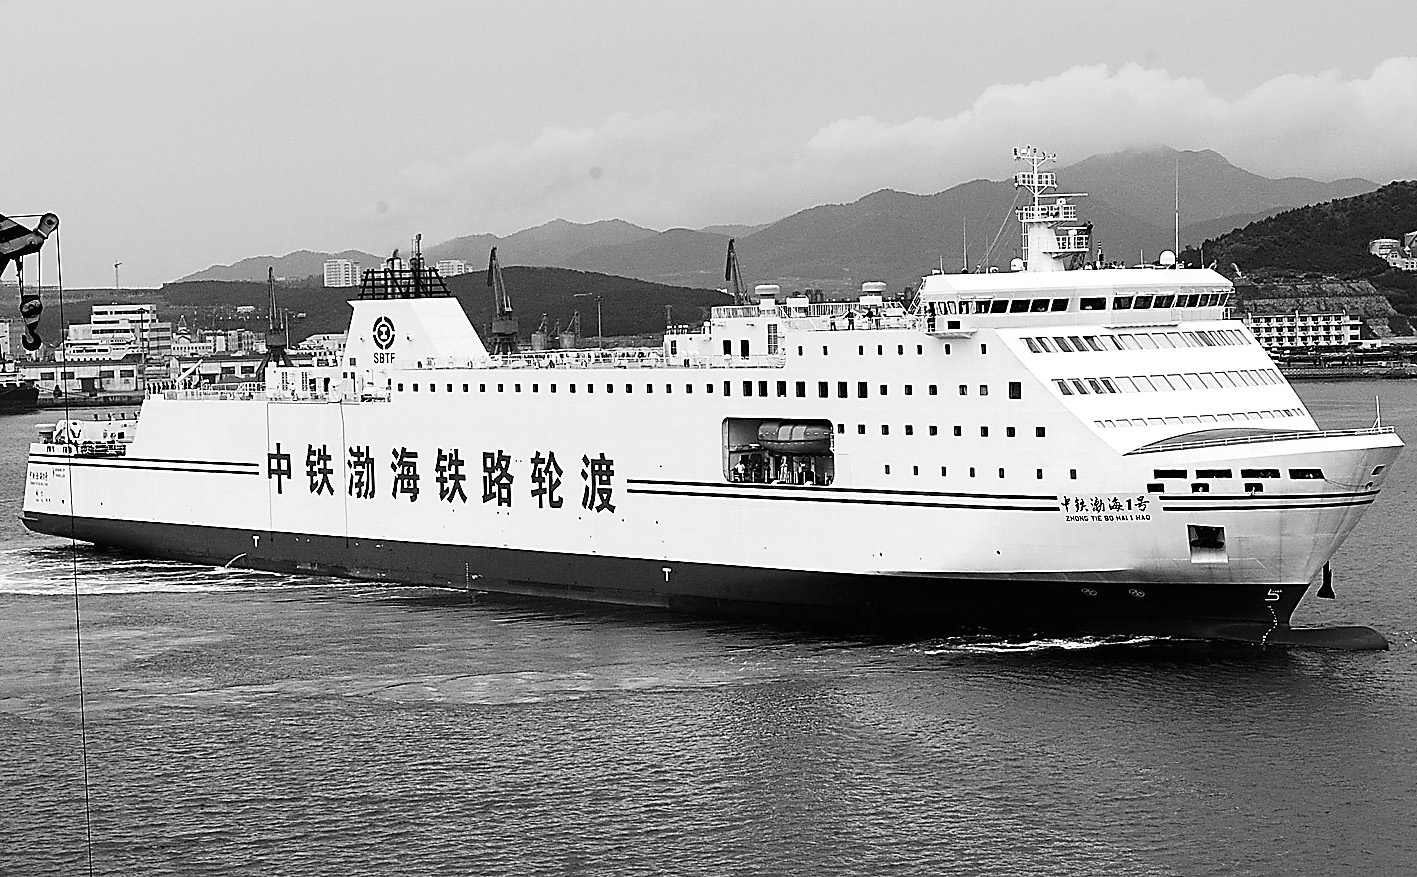 【携程攻略】渤海轮渡，渤海轮渡往返于烟台和大连之间，是客货混装船，条件非常好，对于自驾…